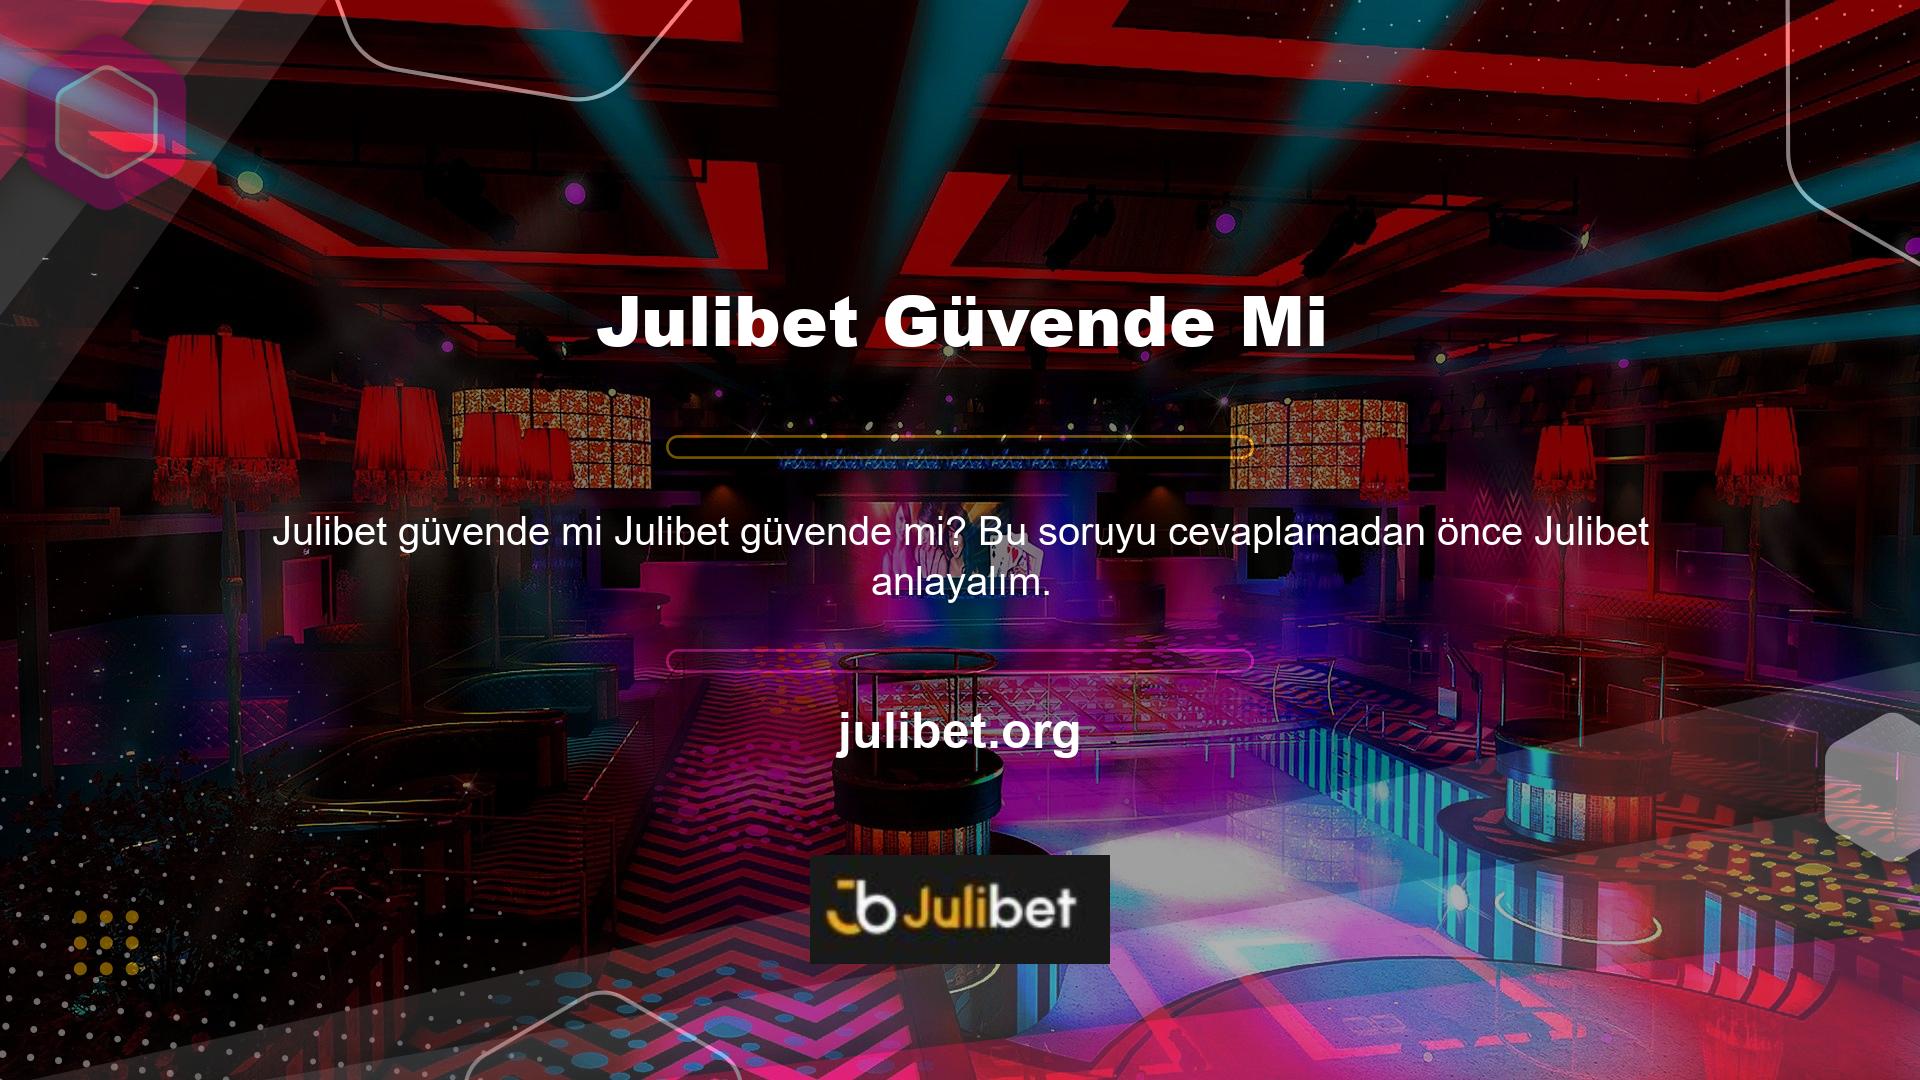 Julibet casino sitesi, işini yöneterek casino sektörüne girdi